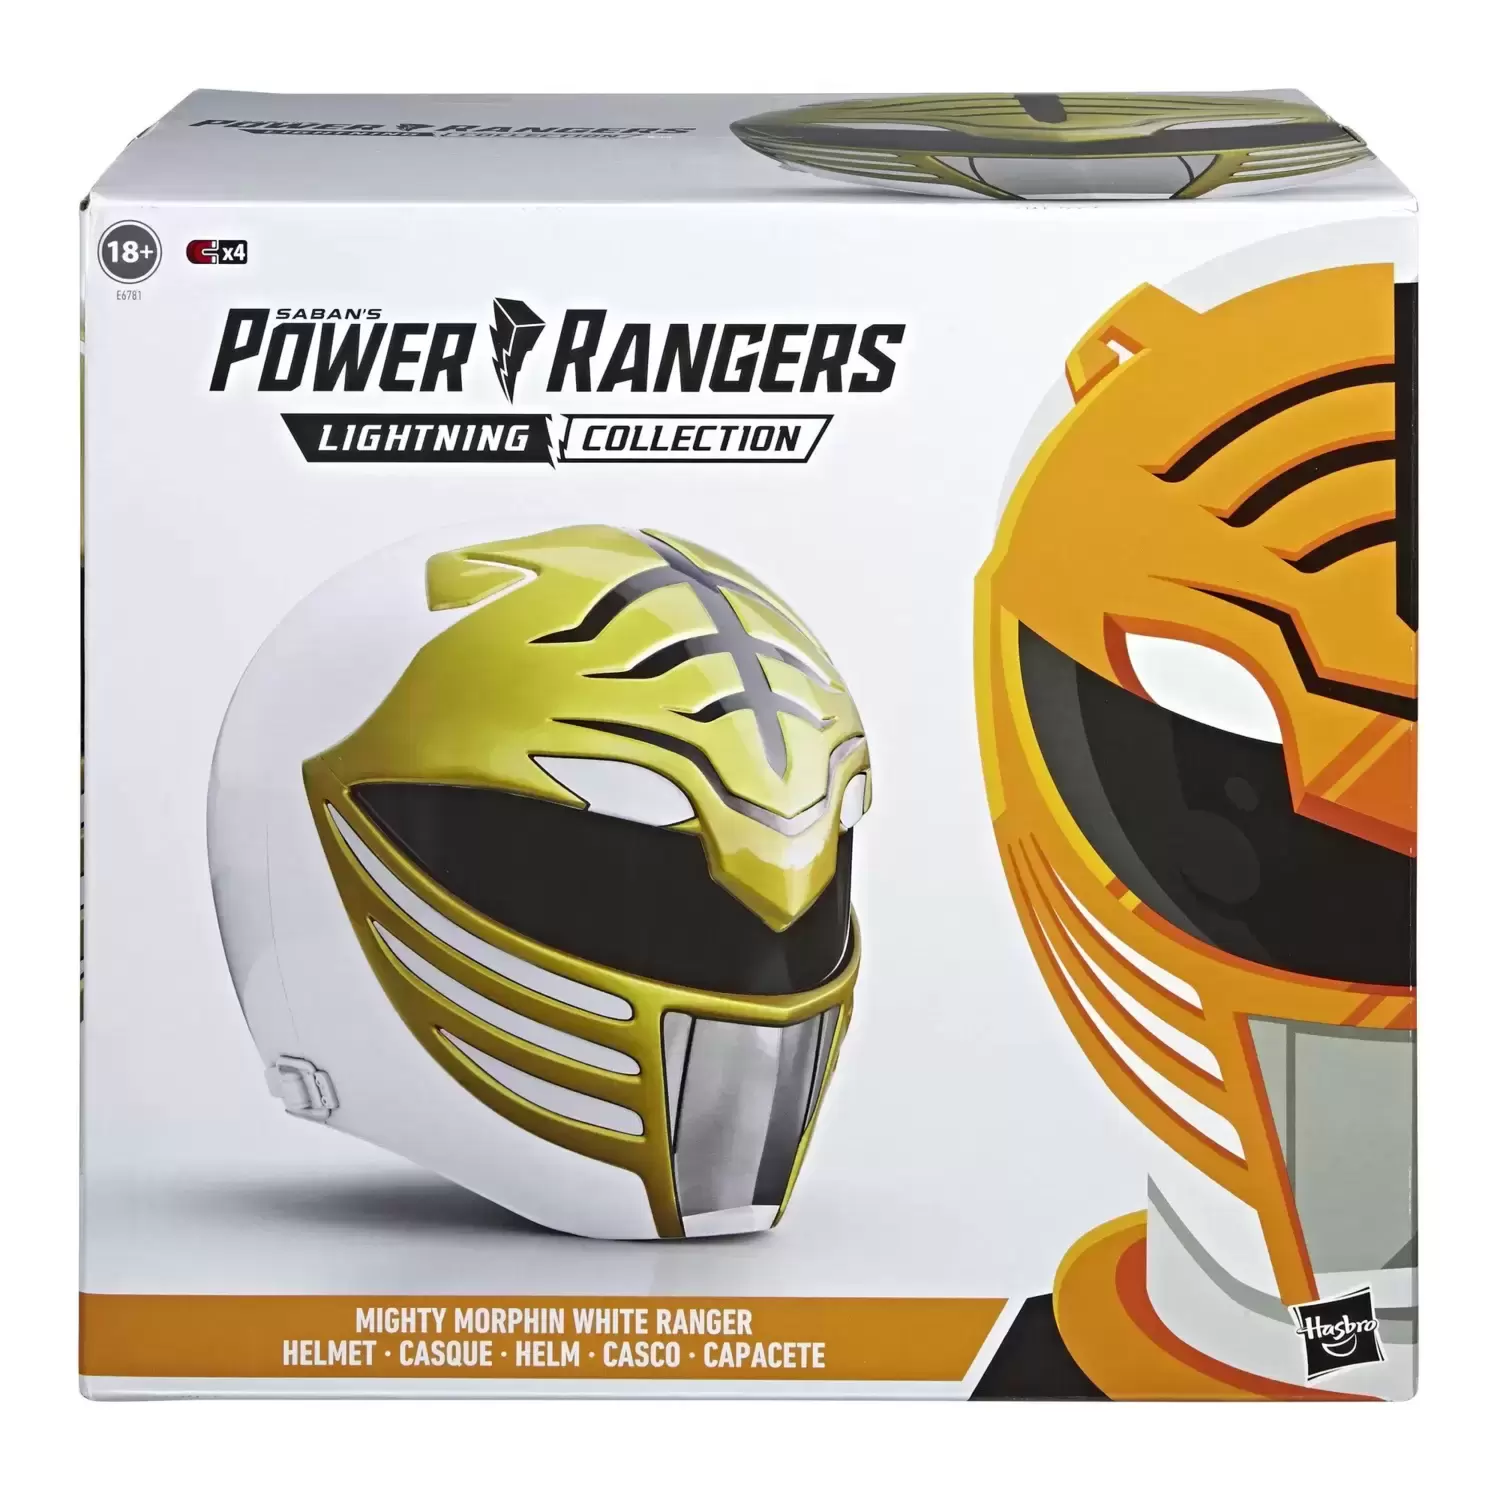 Power Rangers Hasbro - Lightning Collection - Mighty Morphin White Ranger Helmet